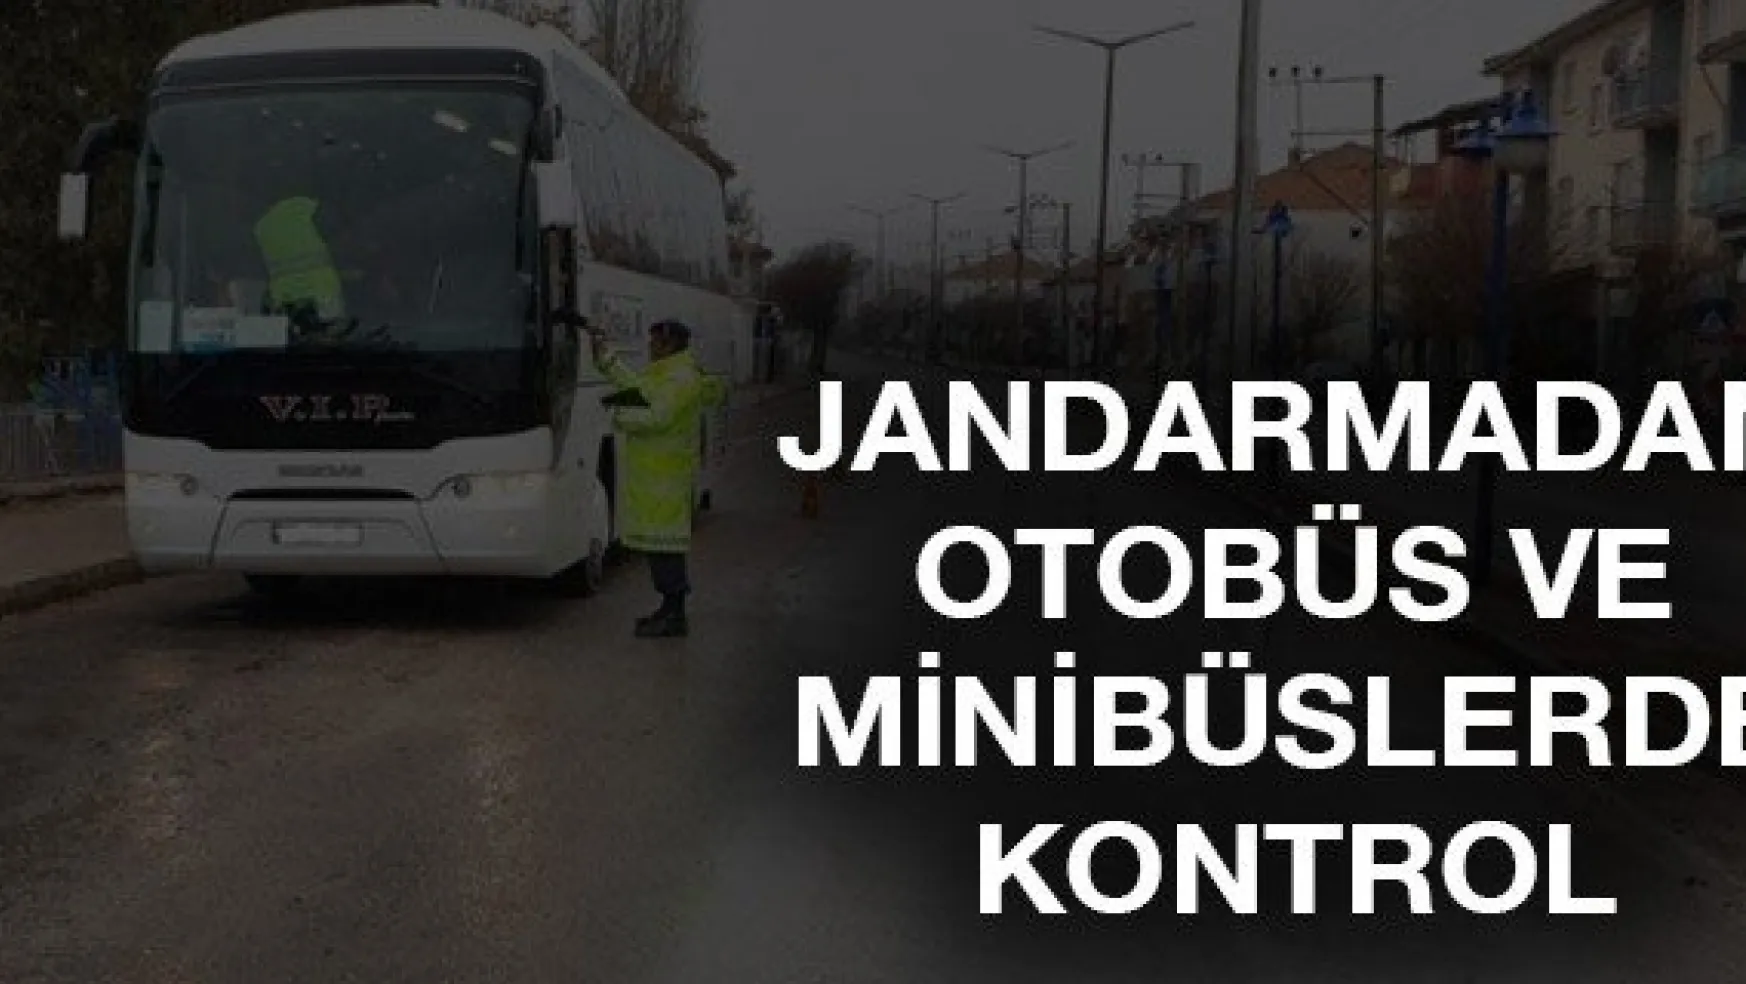 Jandarmadan otobüs ve minibüslerde kontrol